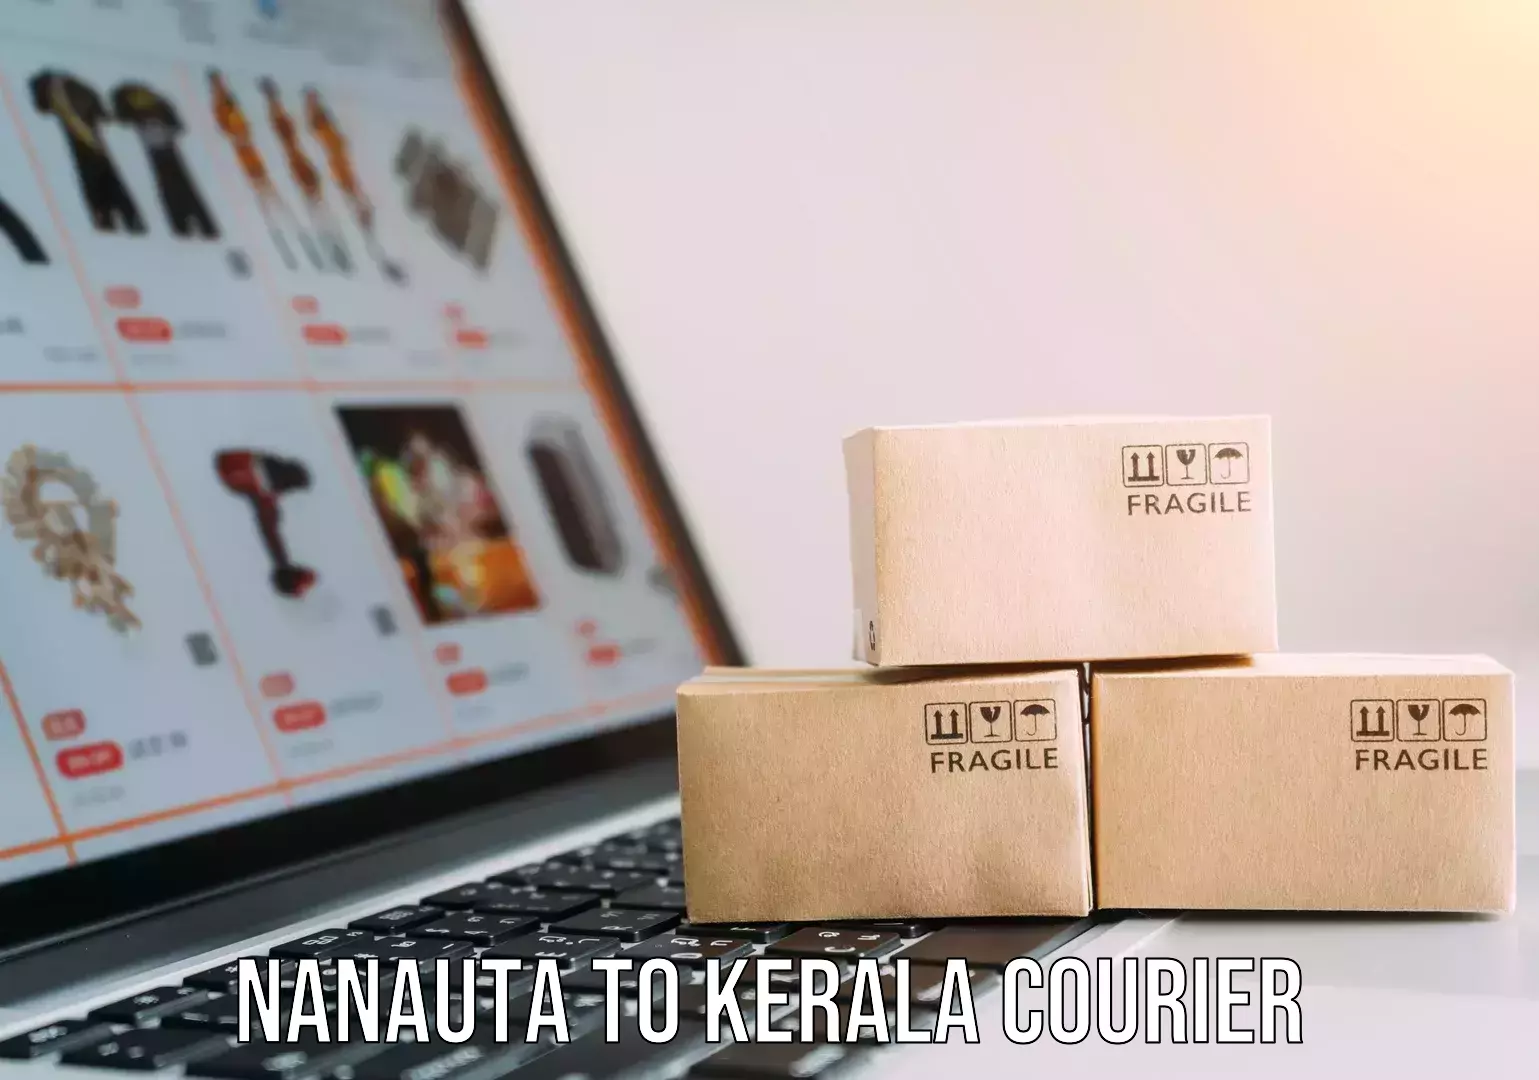 Custom household moving Nanauta to Kerala